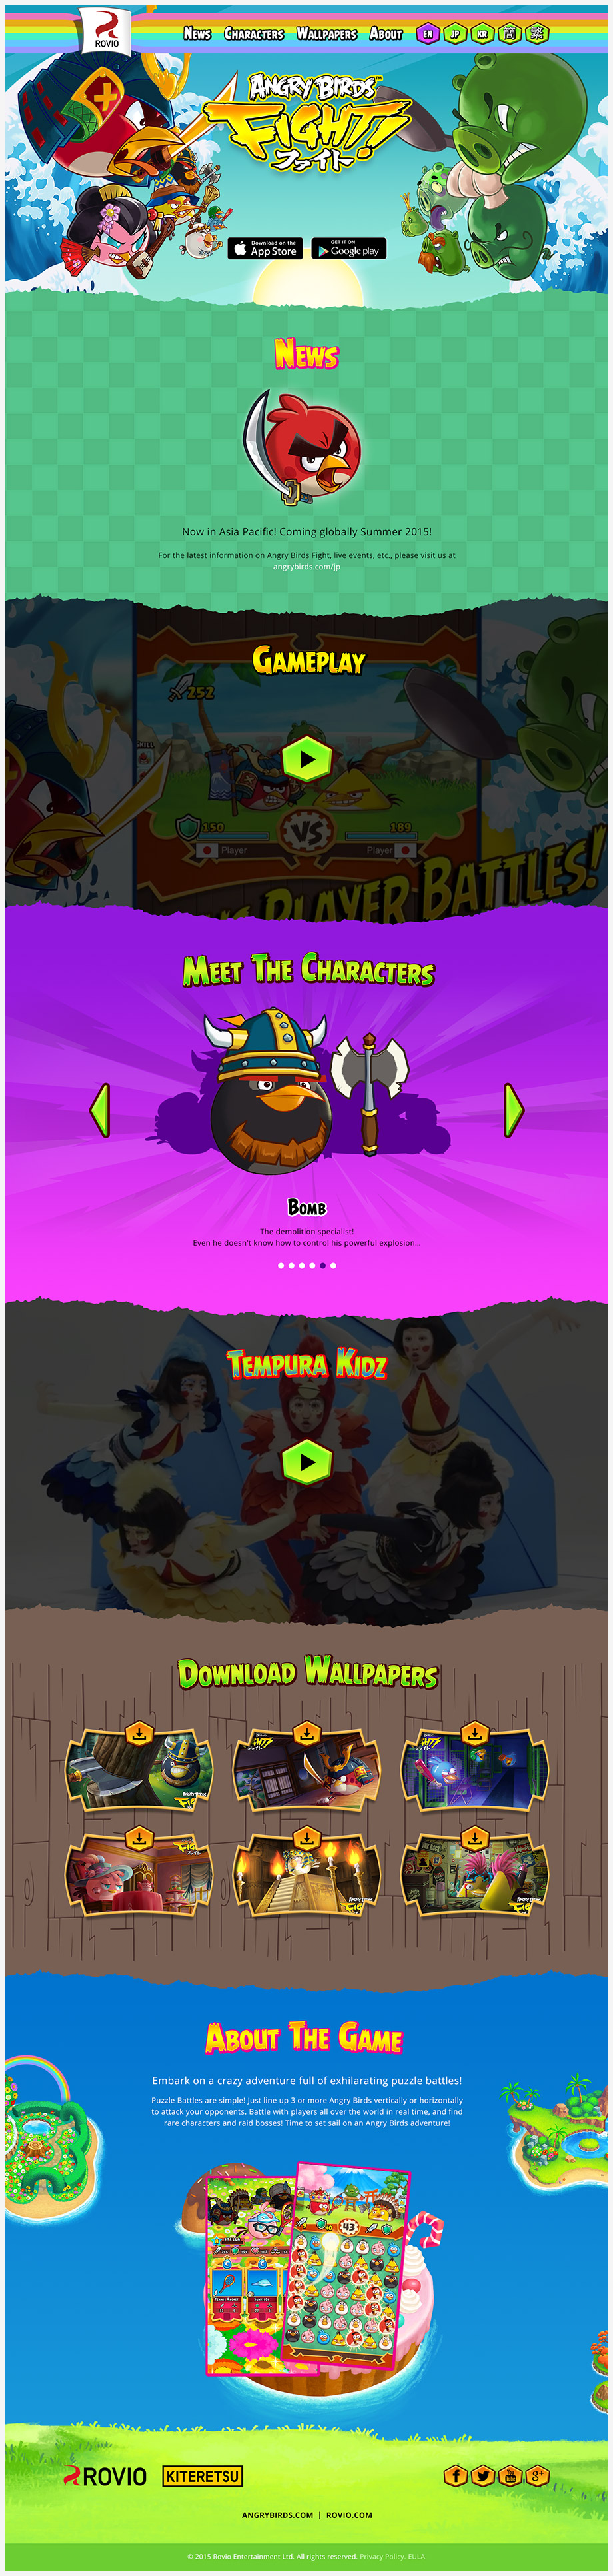 Rovio's Angry Birds Fight! webpage